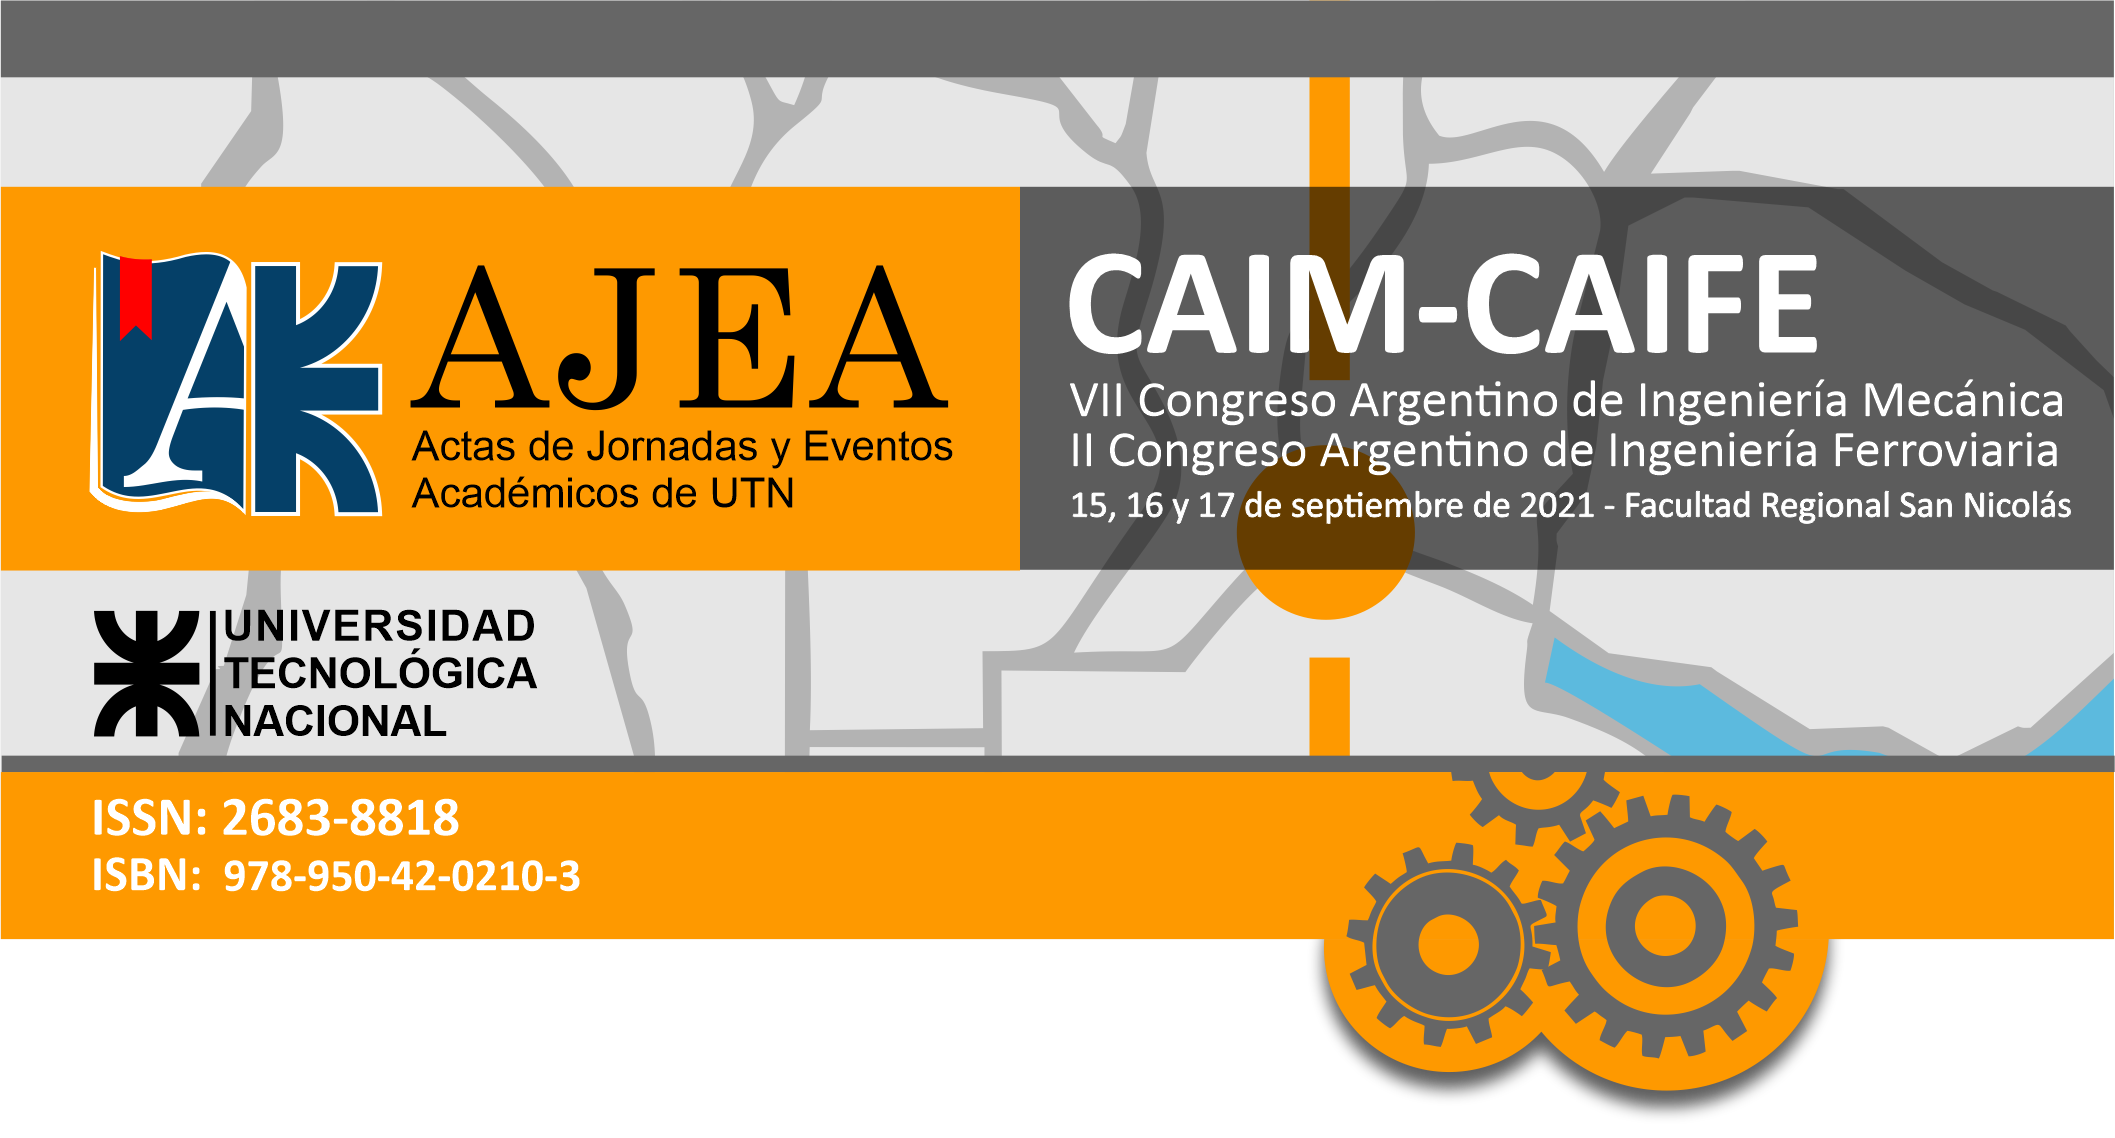 					Ver Núm. 12 (2021): CAIM CAIFE 2020-2021 - VII Congreso Argentino de Ingeniería Mecánica | II Congreso Argentino de Ingeniería Ferroviaria
				